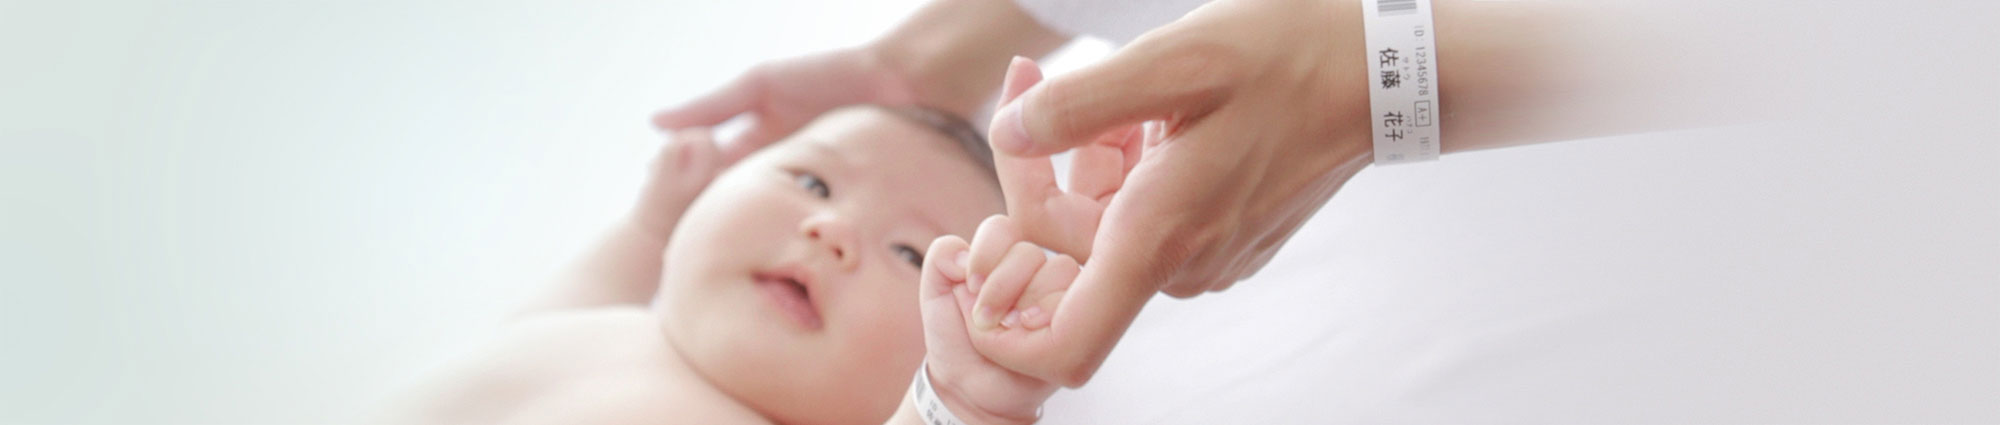 Dziecko w szpitalu trzyma za palec rodzica – dziecko i rodzic mają na sobie opaskę na nadgarstek